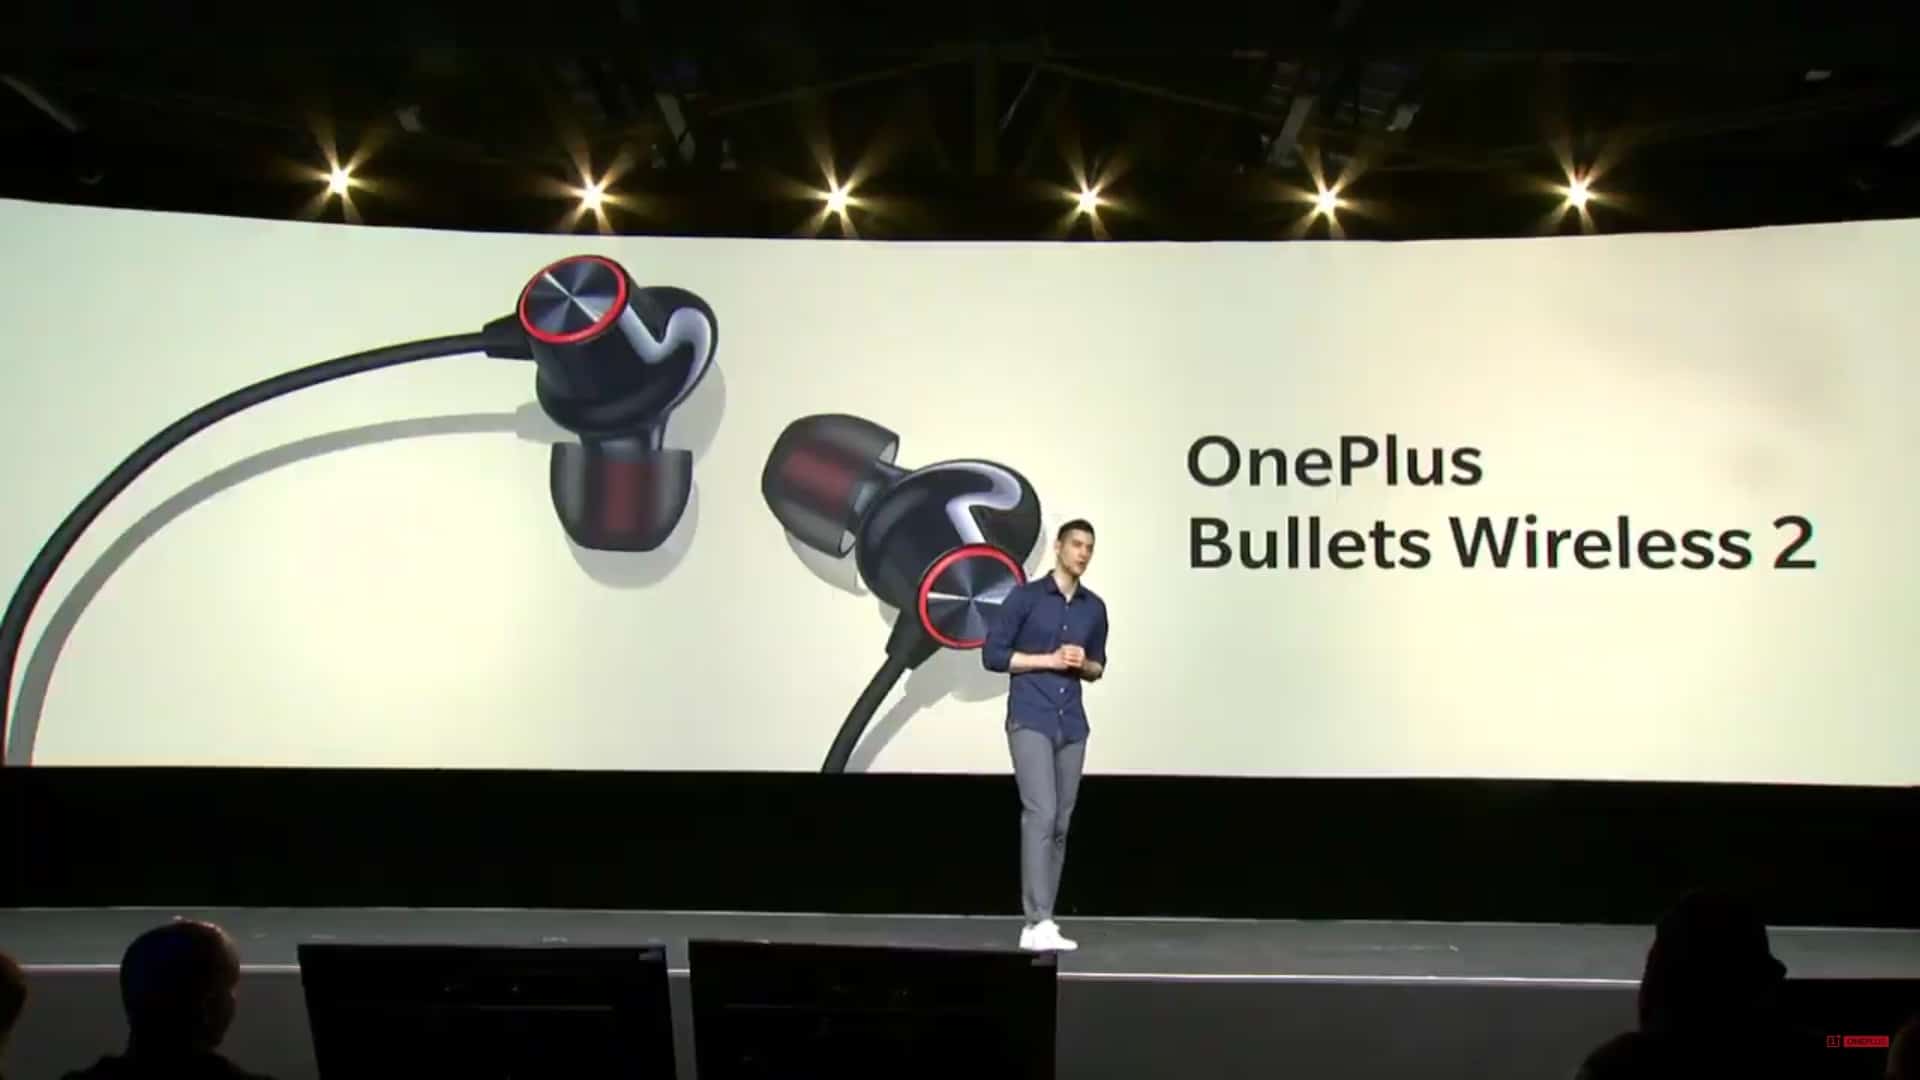 OnePlus เปิดตัว OnePlus 7 Pro กล้องสามตัว ใช้หน่วยความจำ UFS3.0 พร้อมรุ่นธรรมดากล้องคู่ และรุ่น 5G 51